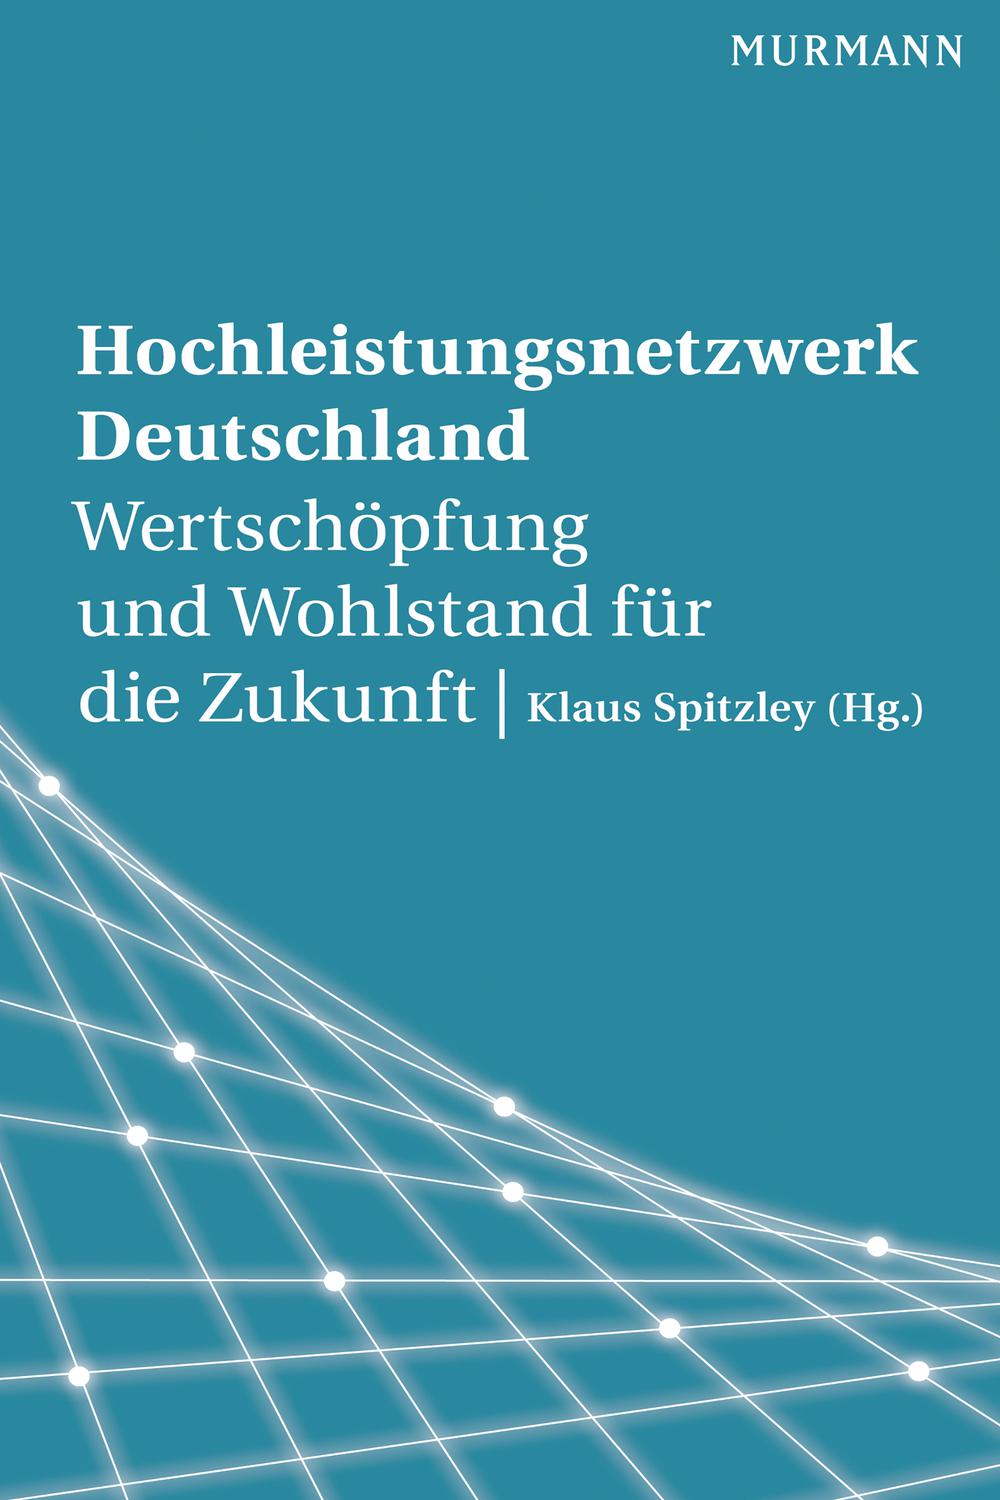 Hochleistungsnetzwerk Deutschland - Klaus Spitzley